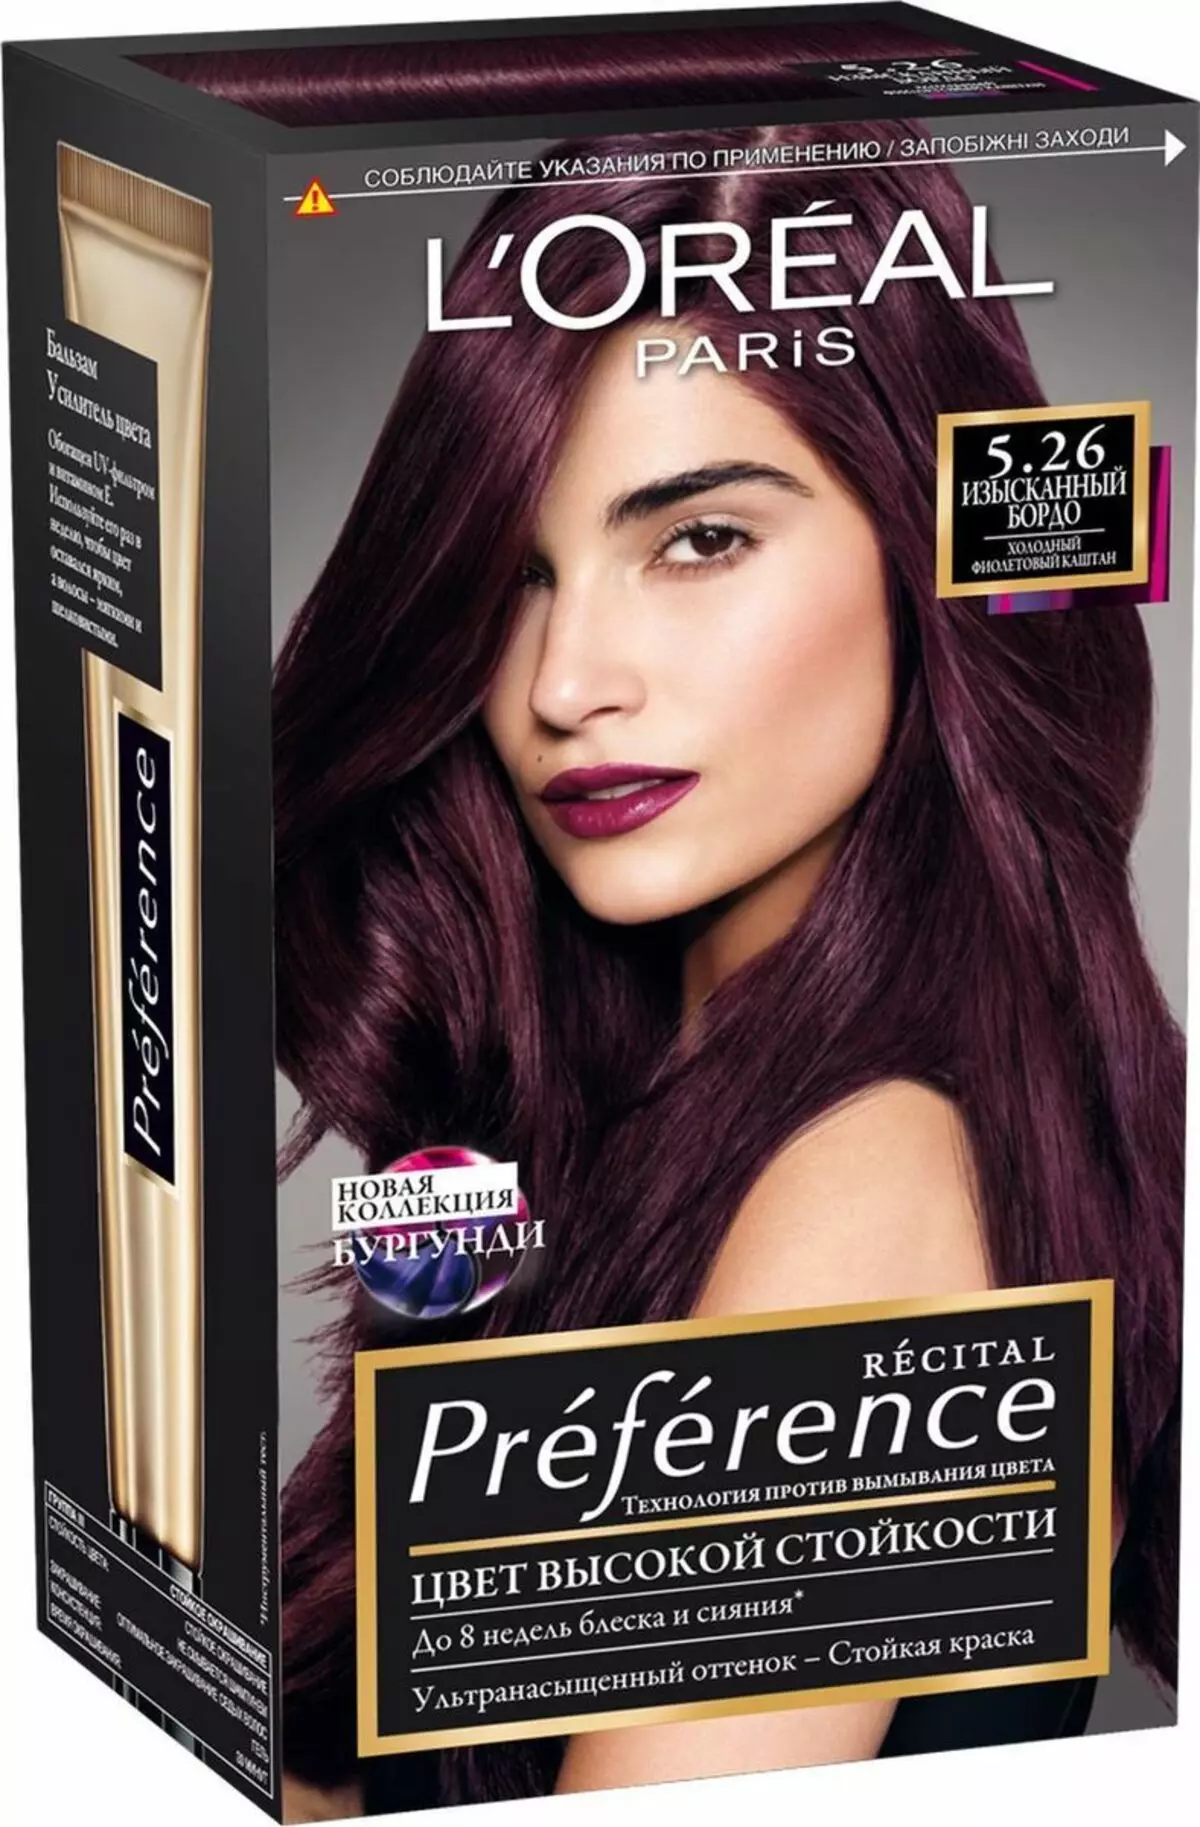 Berinjela de cor de cabelo (52 fotos): Quem é a tonalidade da berinjela escura? Cor coloração madura berinjela 5199_37